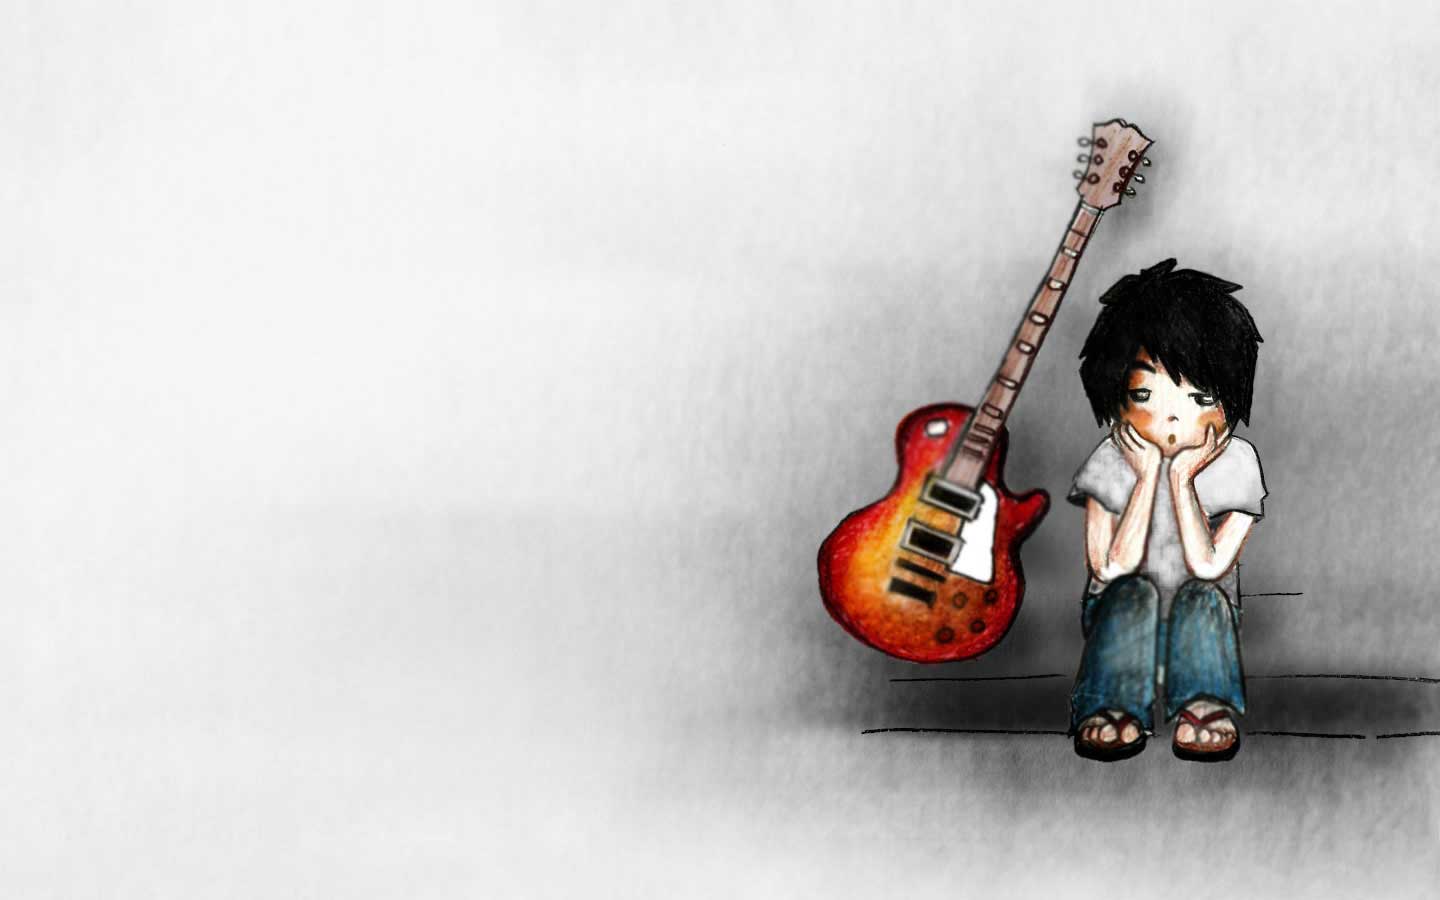 dessin animé garçon fond d'écran,instrument de musique,guitariste,guitare,instruments à cordes pincées,musicien